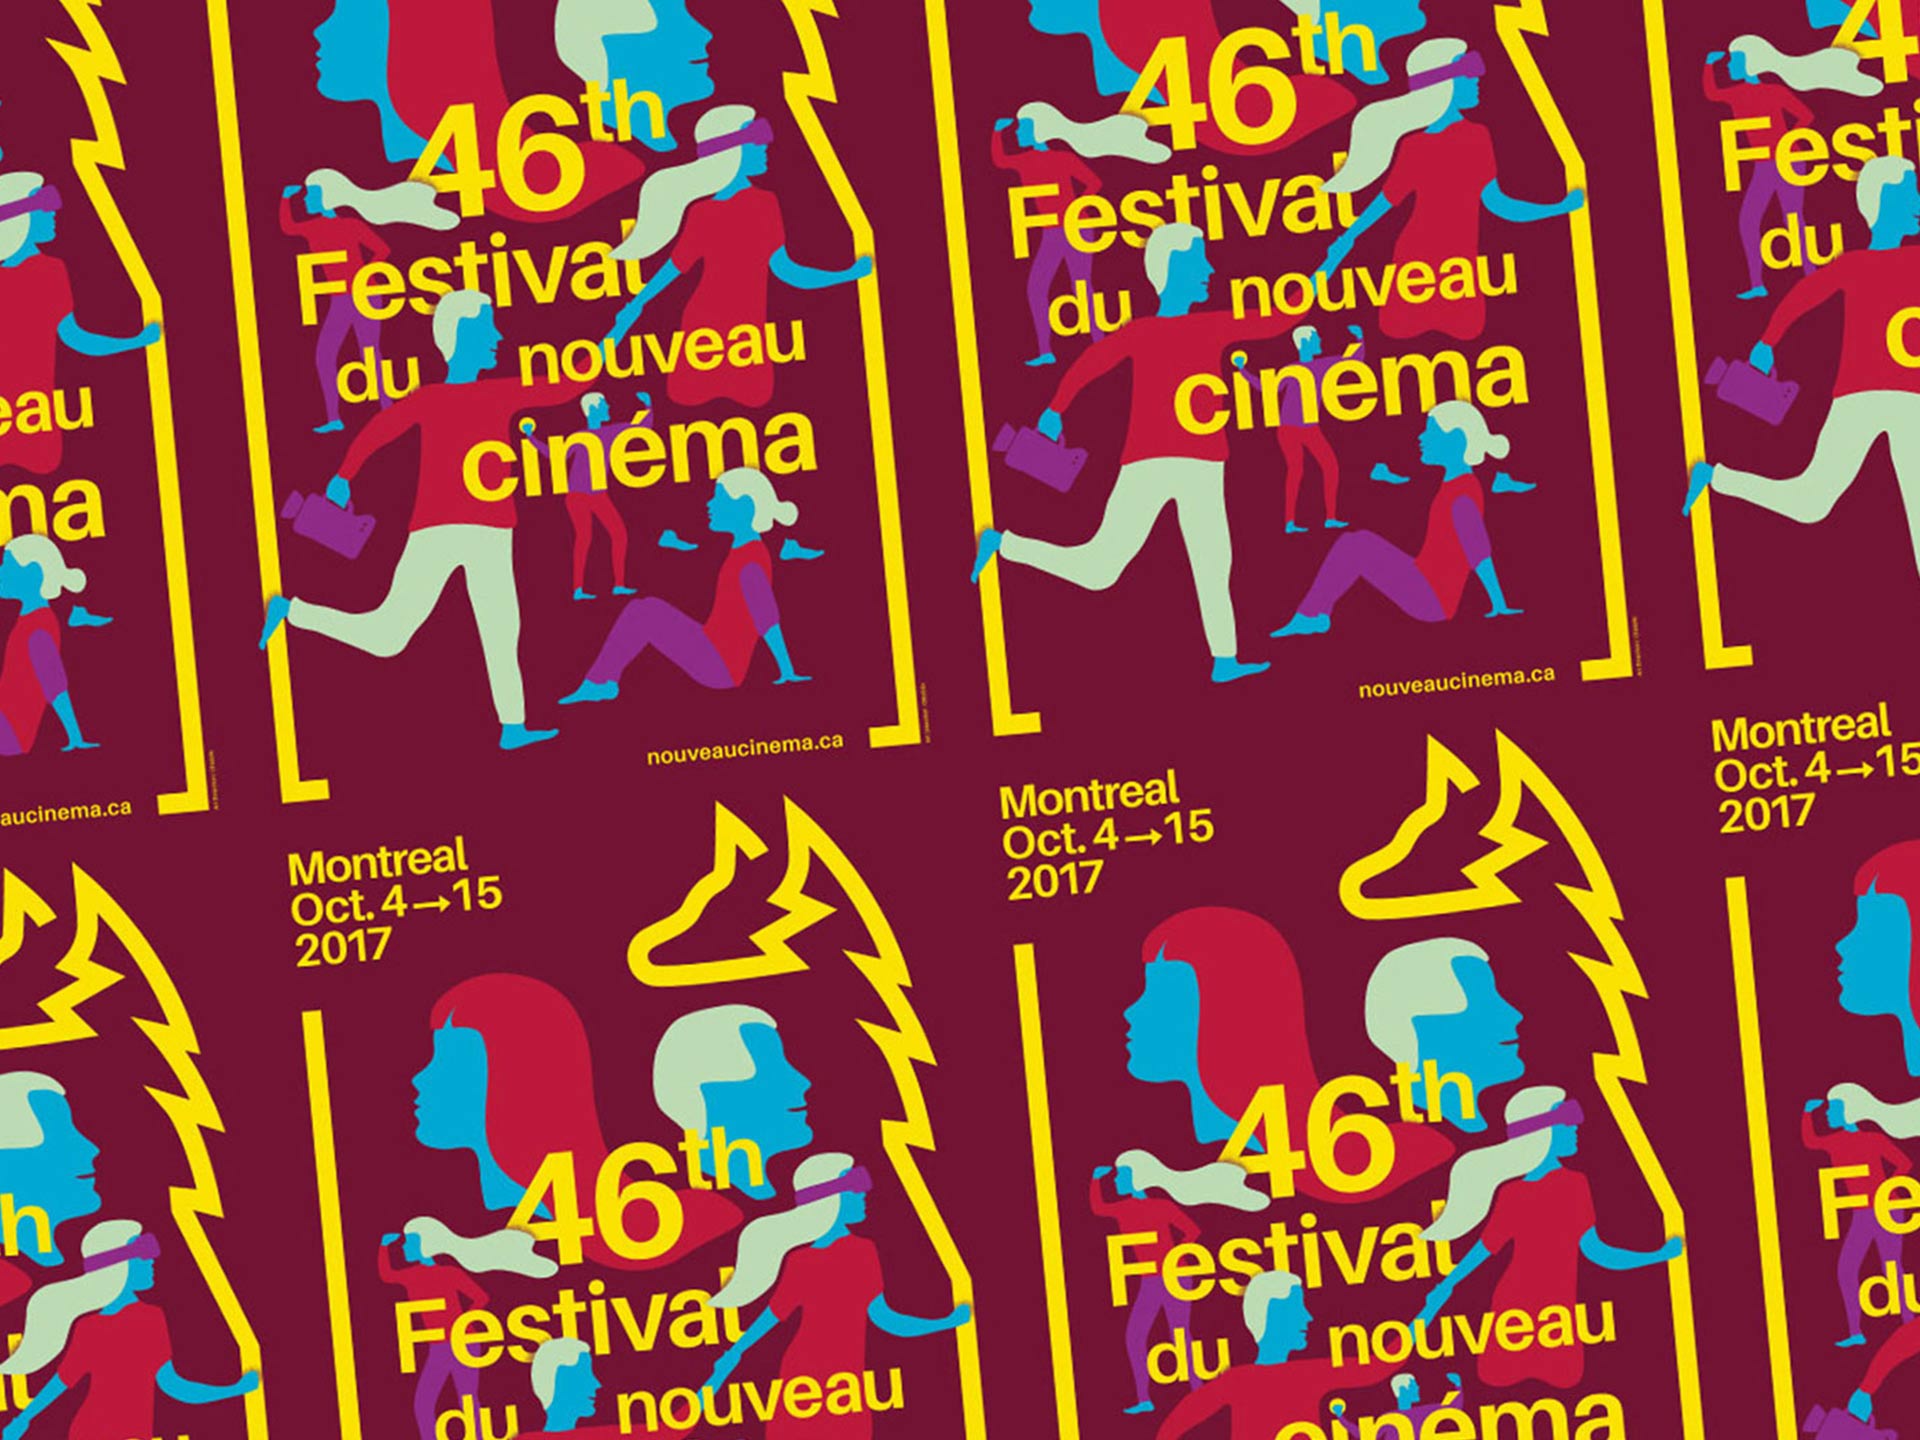 46e Festival du nouveau cinéma